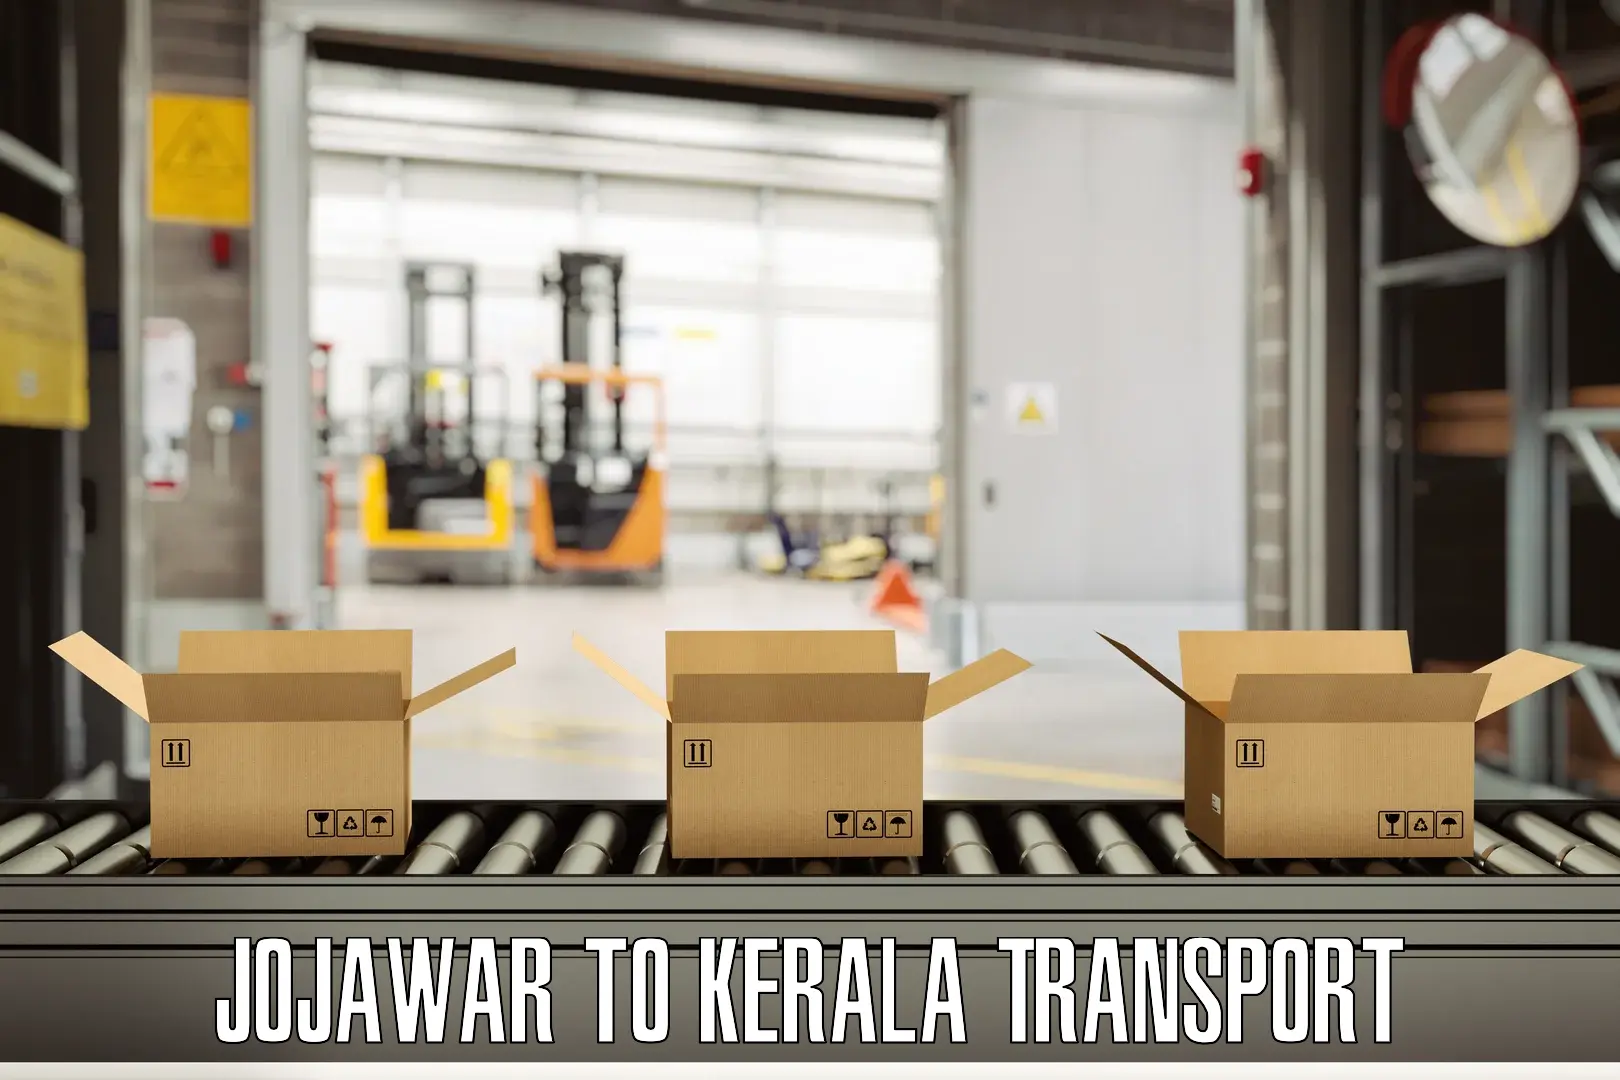 Transport in sharing Jojawar to Olavakkot